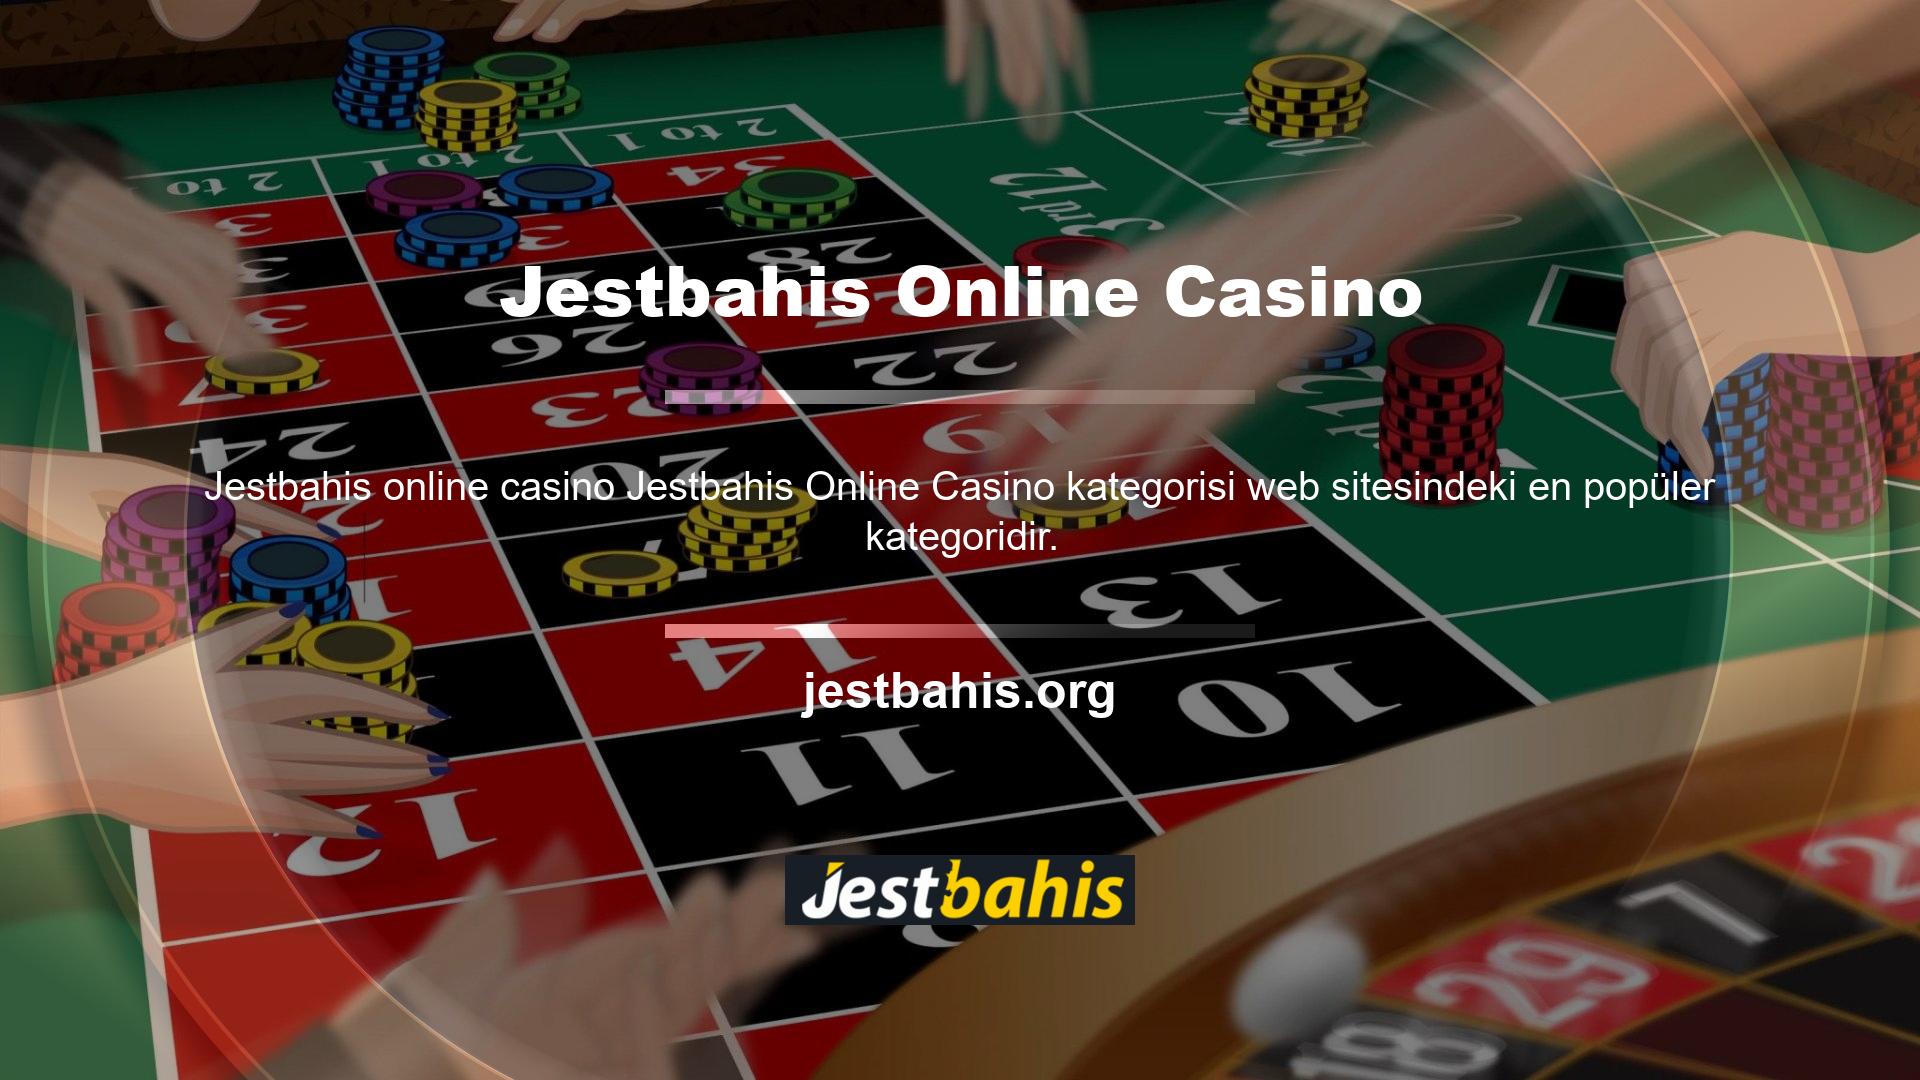 Web sitesi, poker, bakara, blackjack ve rulet dahil olmak üzere çeşitli oyunlara bahis oynayabileceğiniz çok sayıda özel oda ve özel salon sunmaktadır